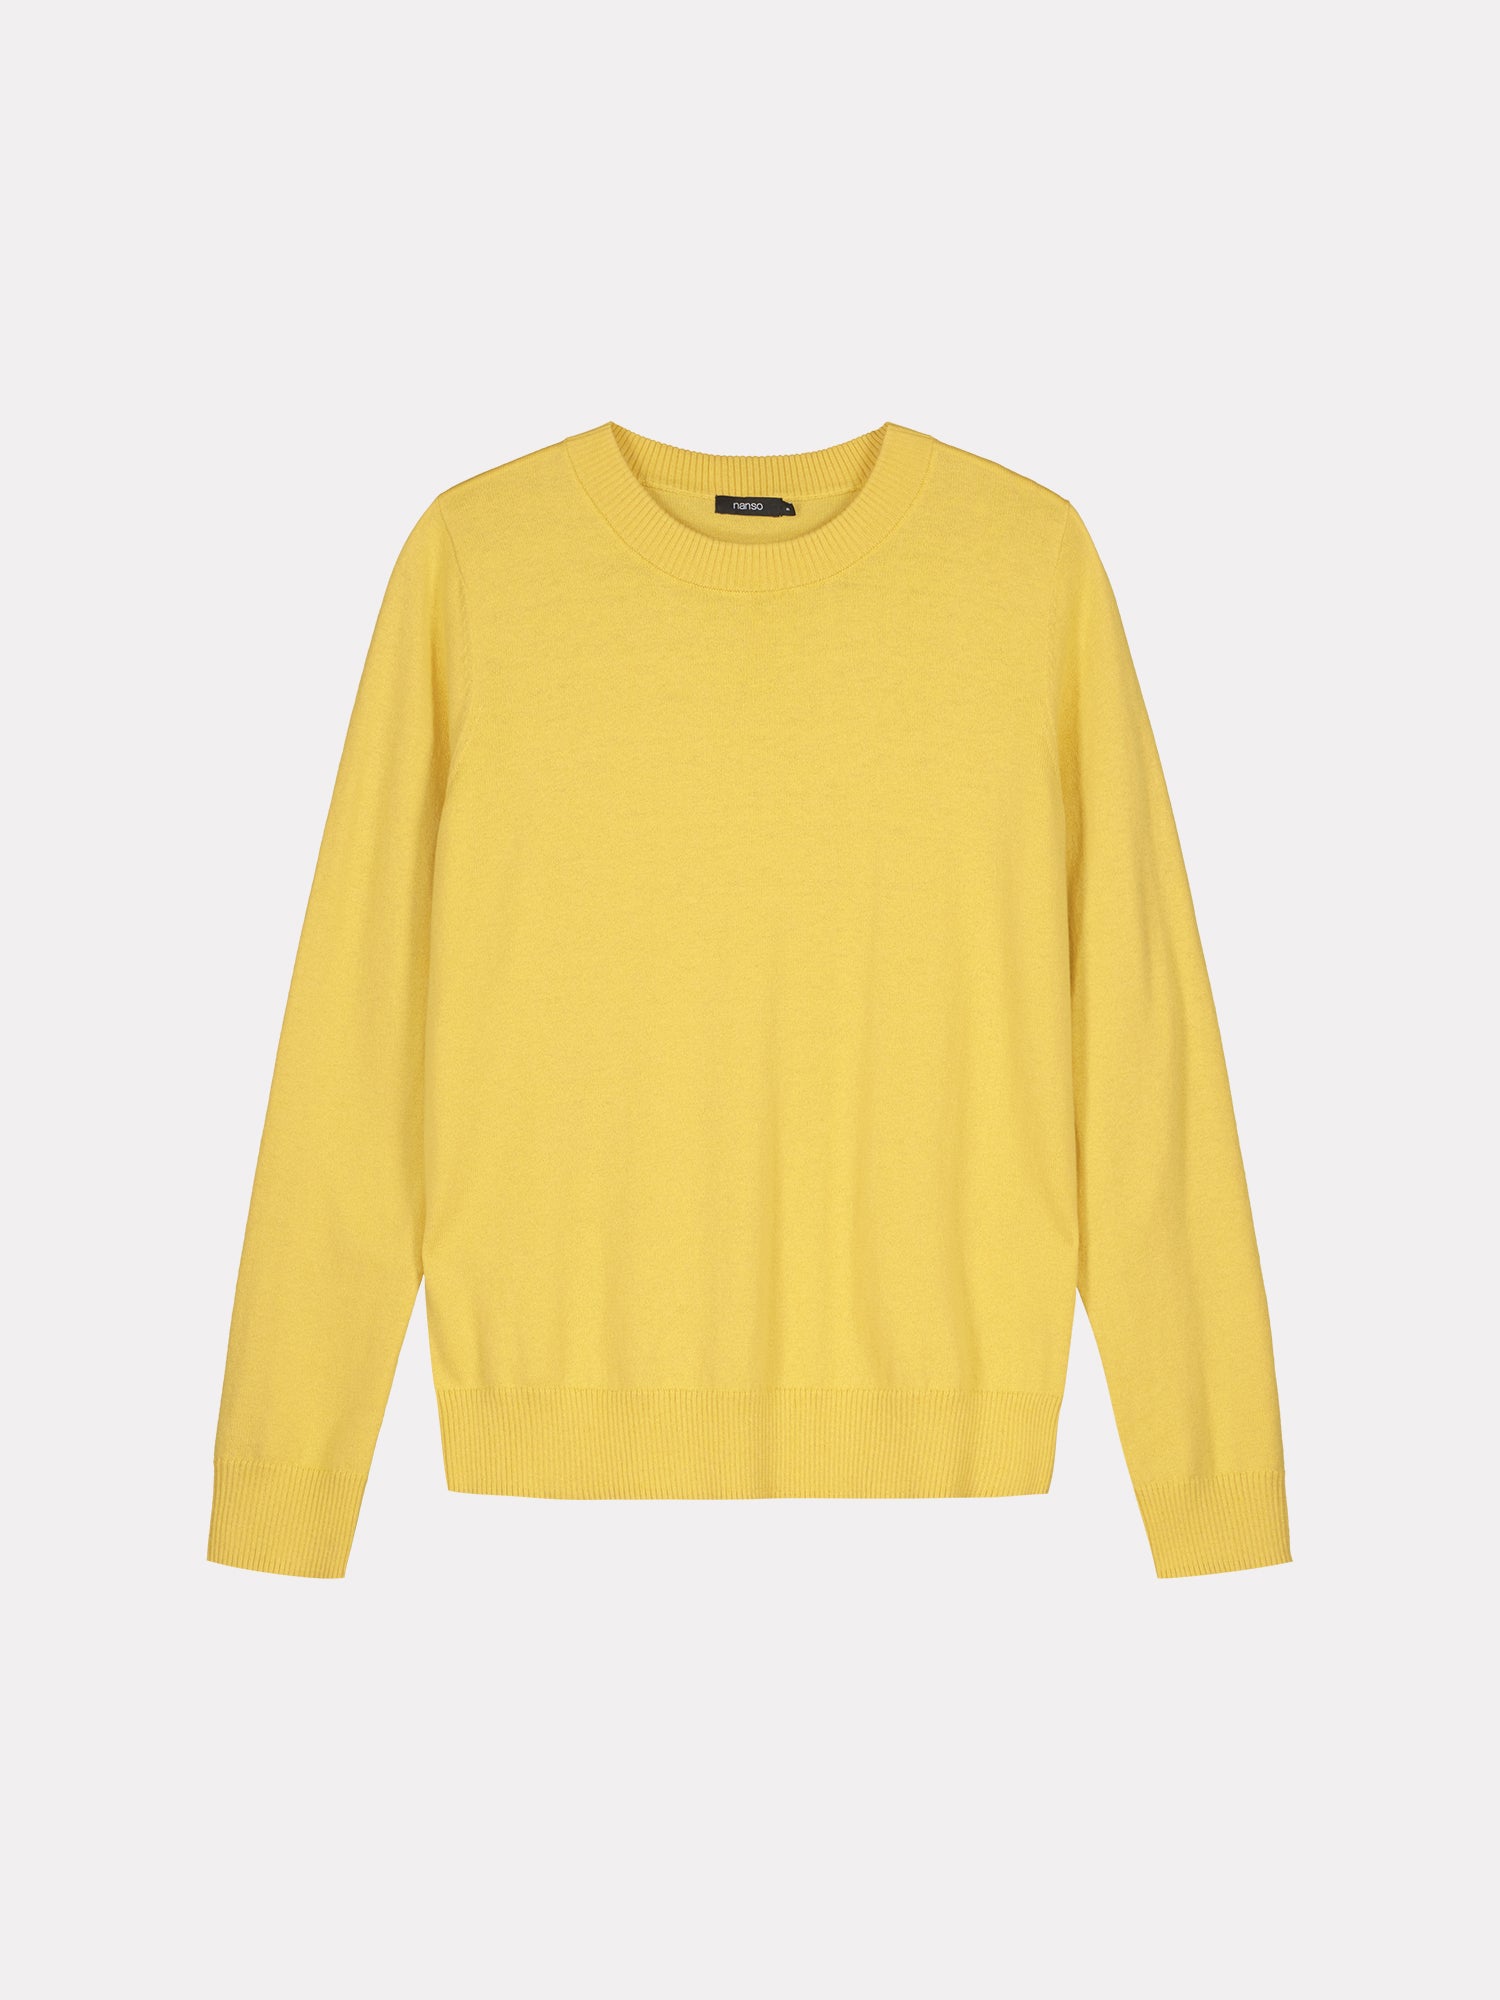 Nanson naisten yksinkertaisen tyylikäs ja kevyt keltainen Villis-neulepusero.